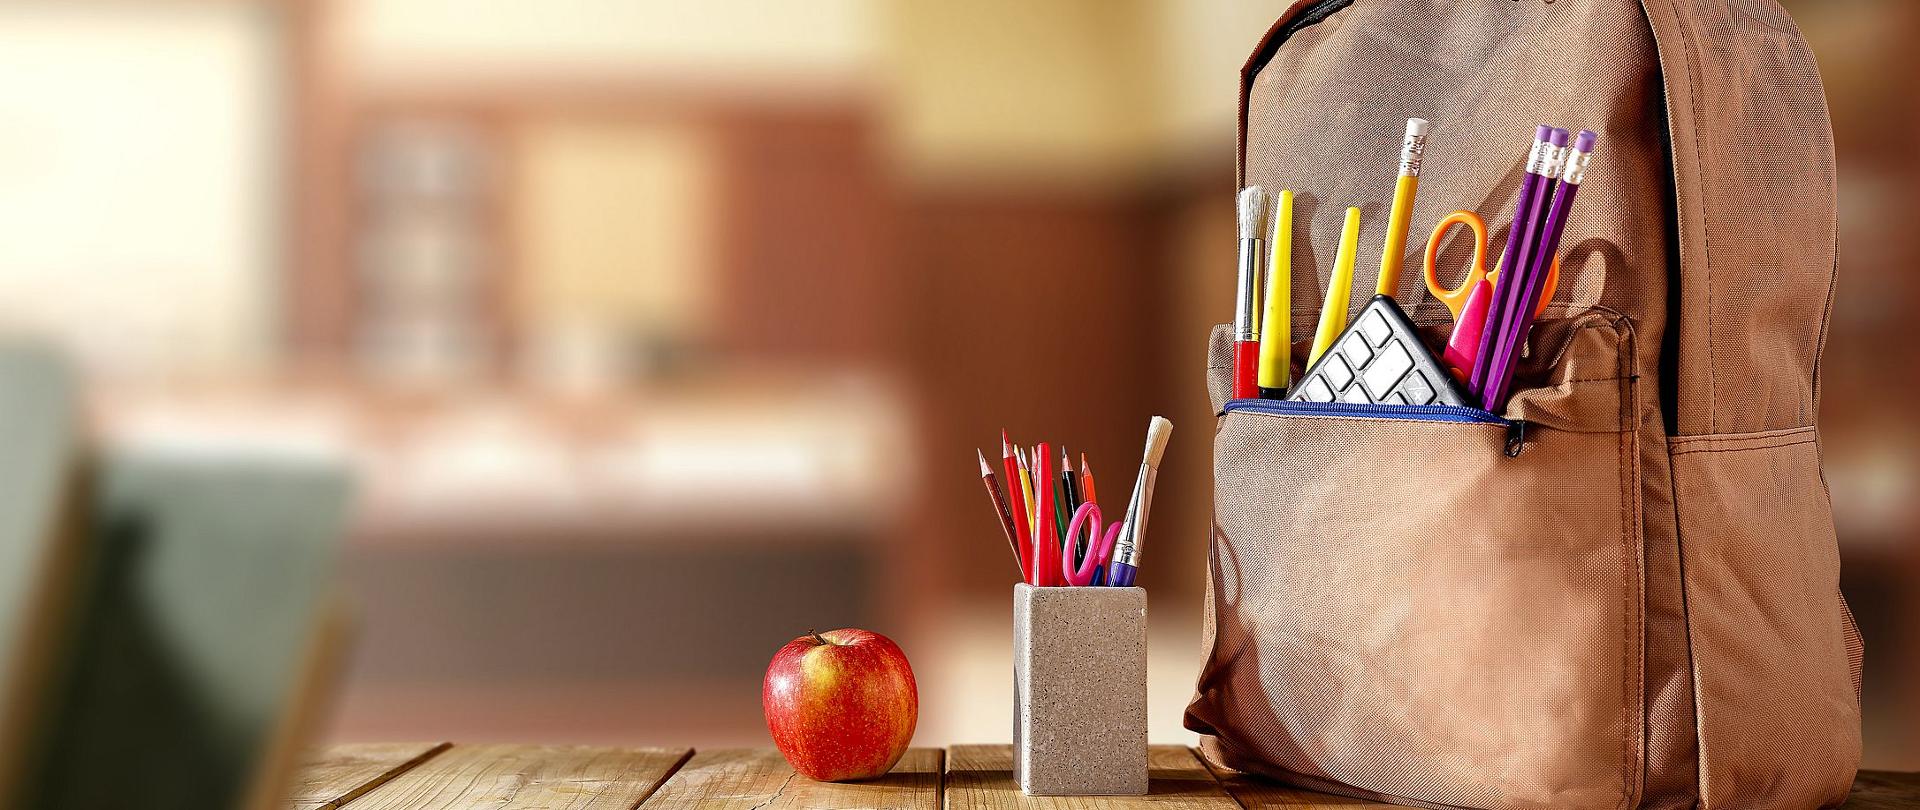 Zdjęcie przedstawia położony na szkolnym biurku plecak, pojemnik na przybory szkolne oraz jabłko. W tle rozmyte tło sali szkolnej.